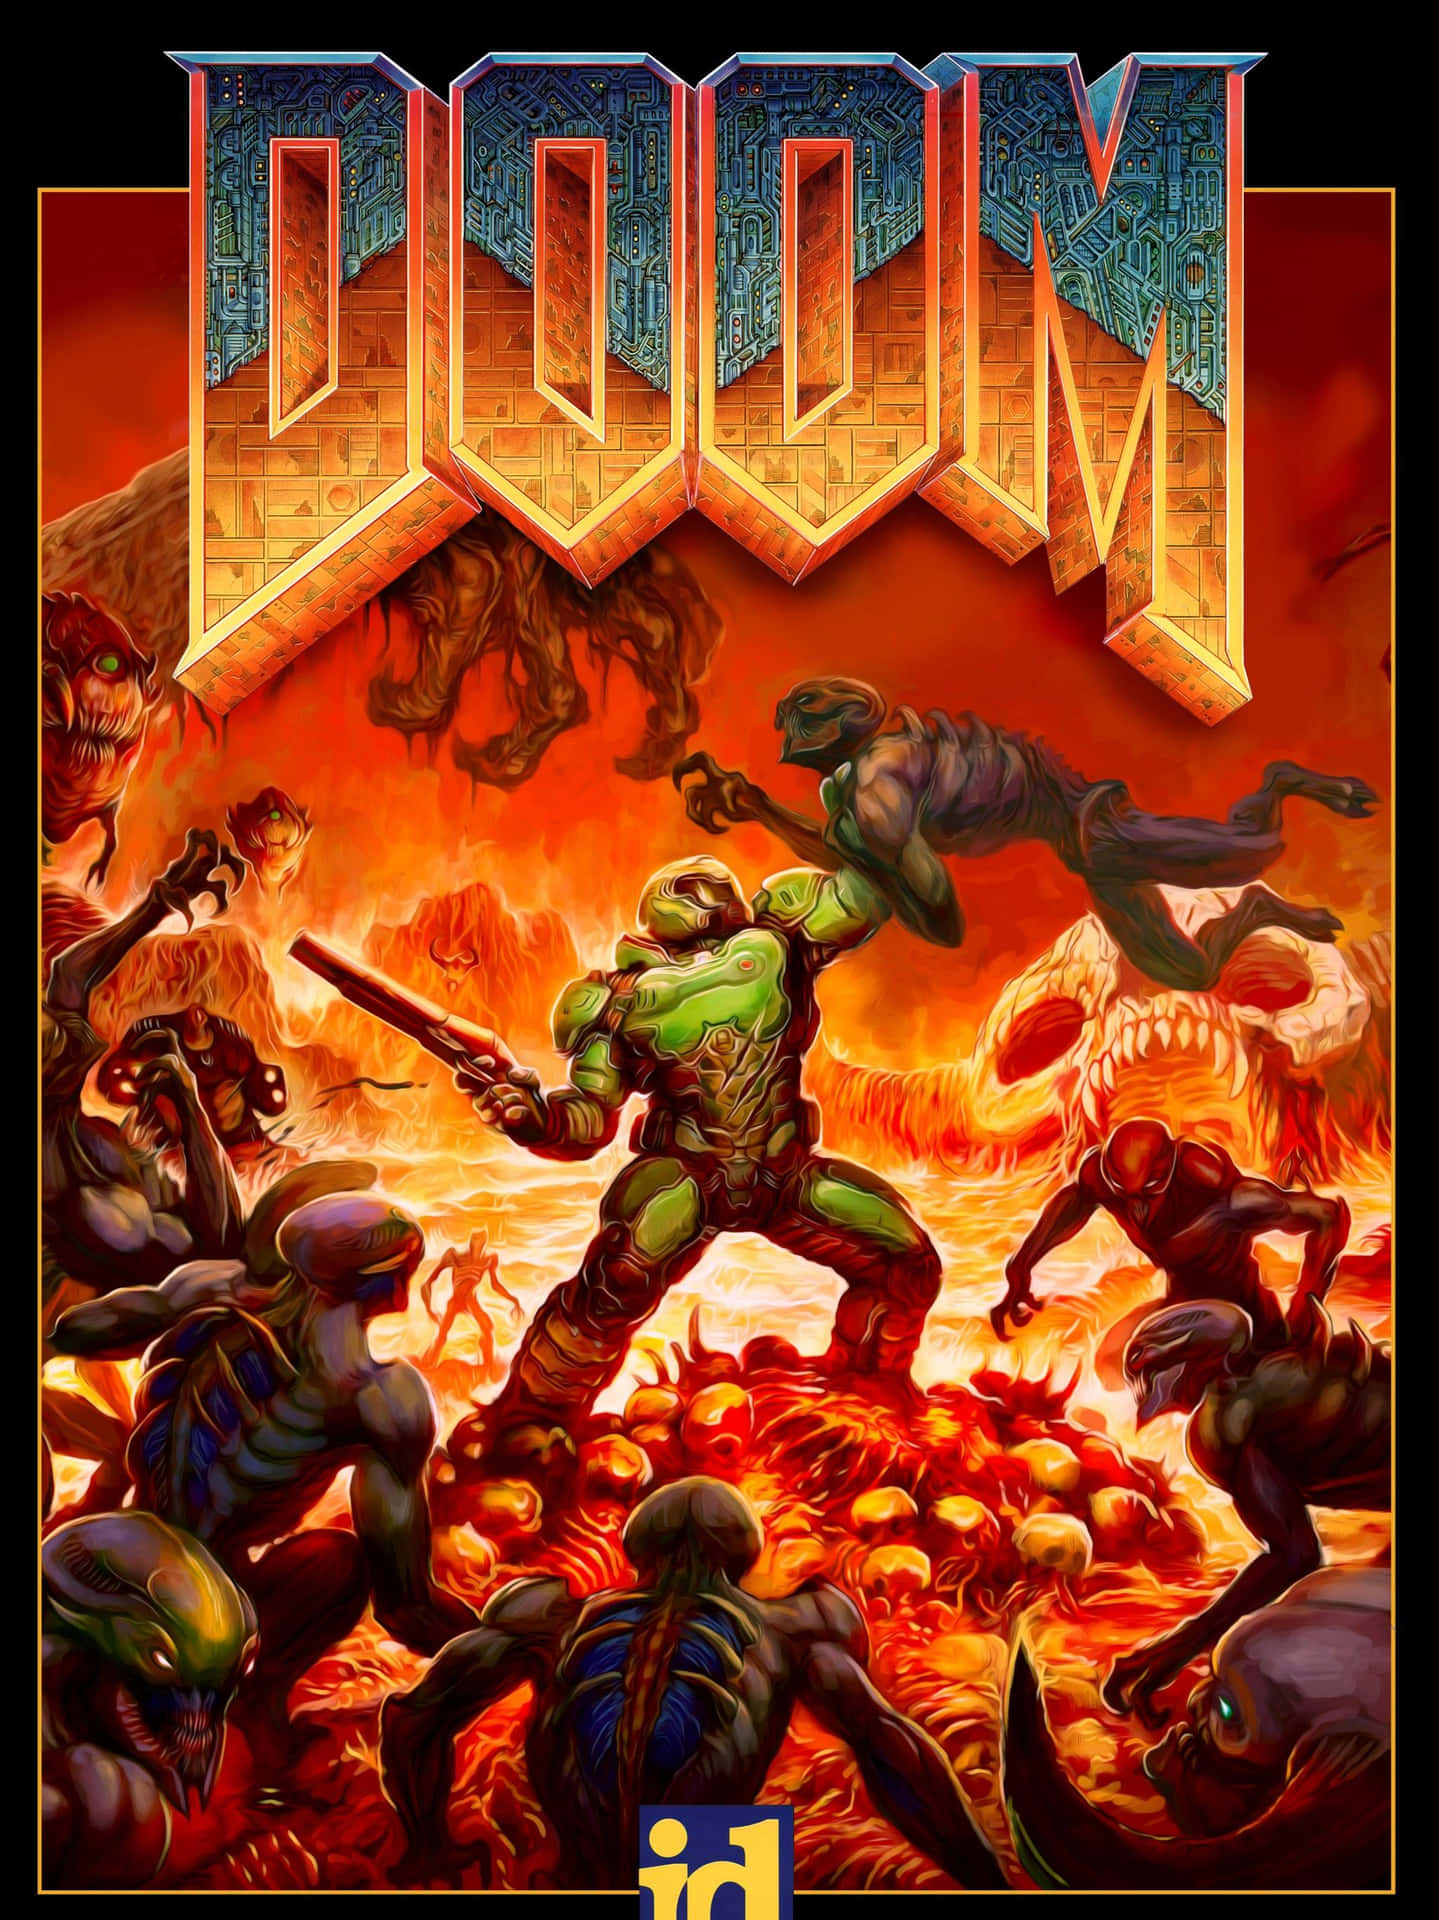 Dæk det op Doom PC-spil dækket med et gevær peger. Wallpaper